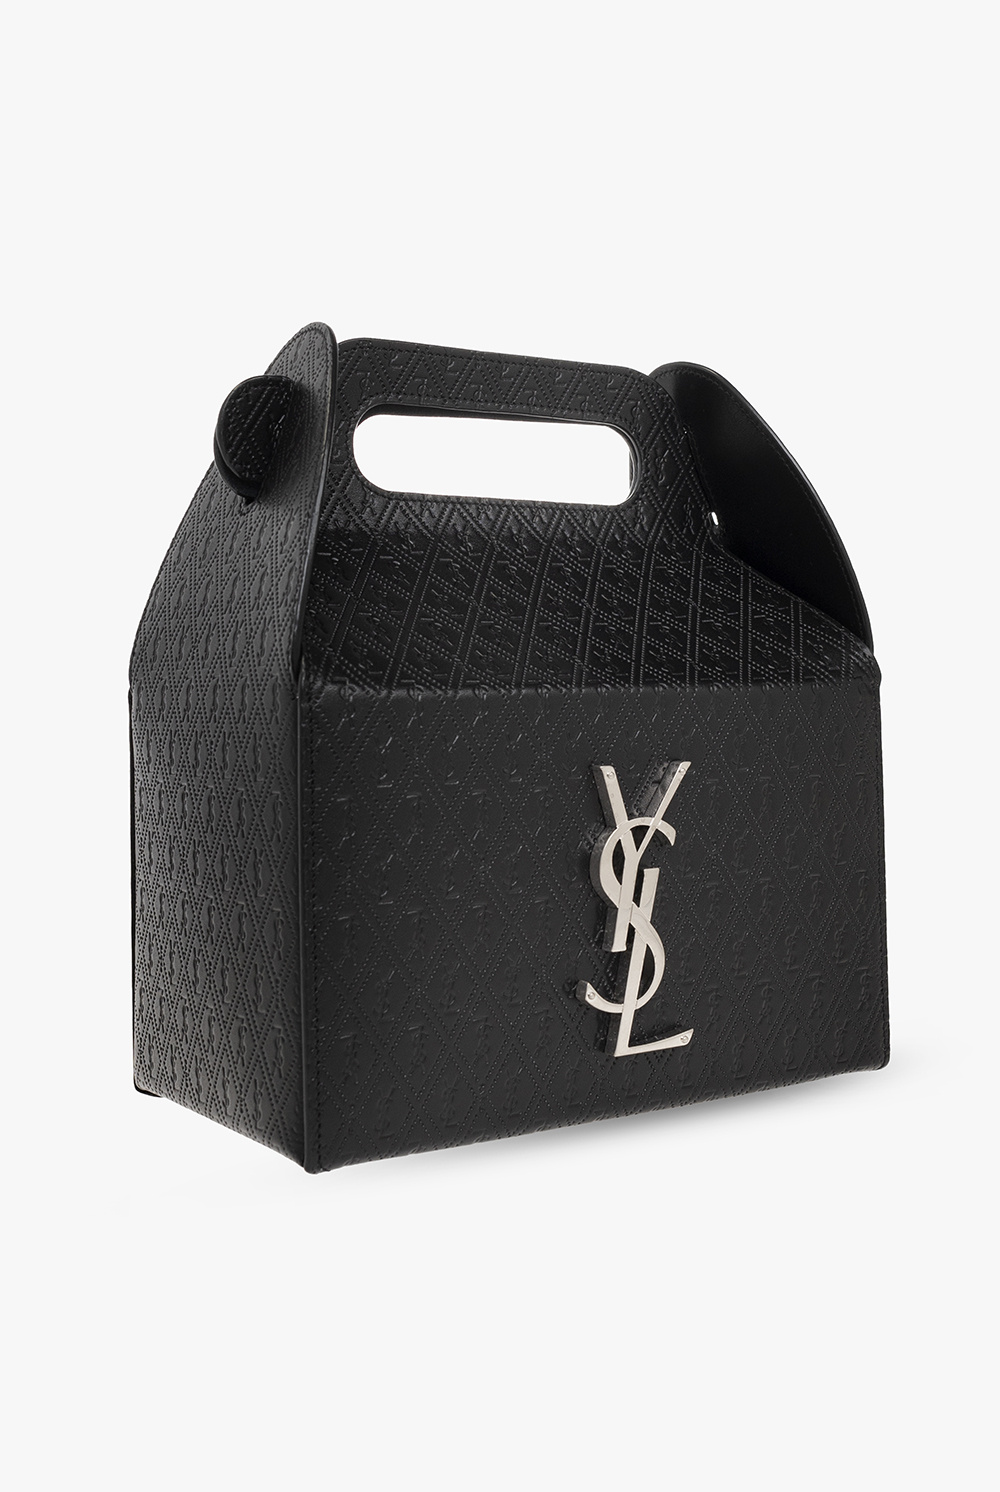 New* YSL Takeaway Box Bag Review + What Fits + Mod Shots+ Final